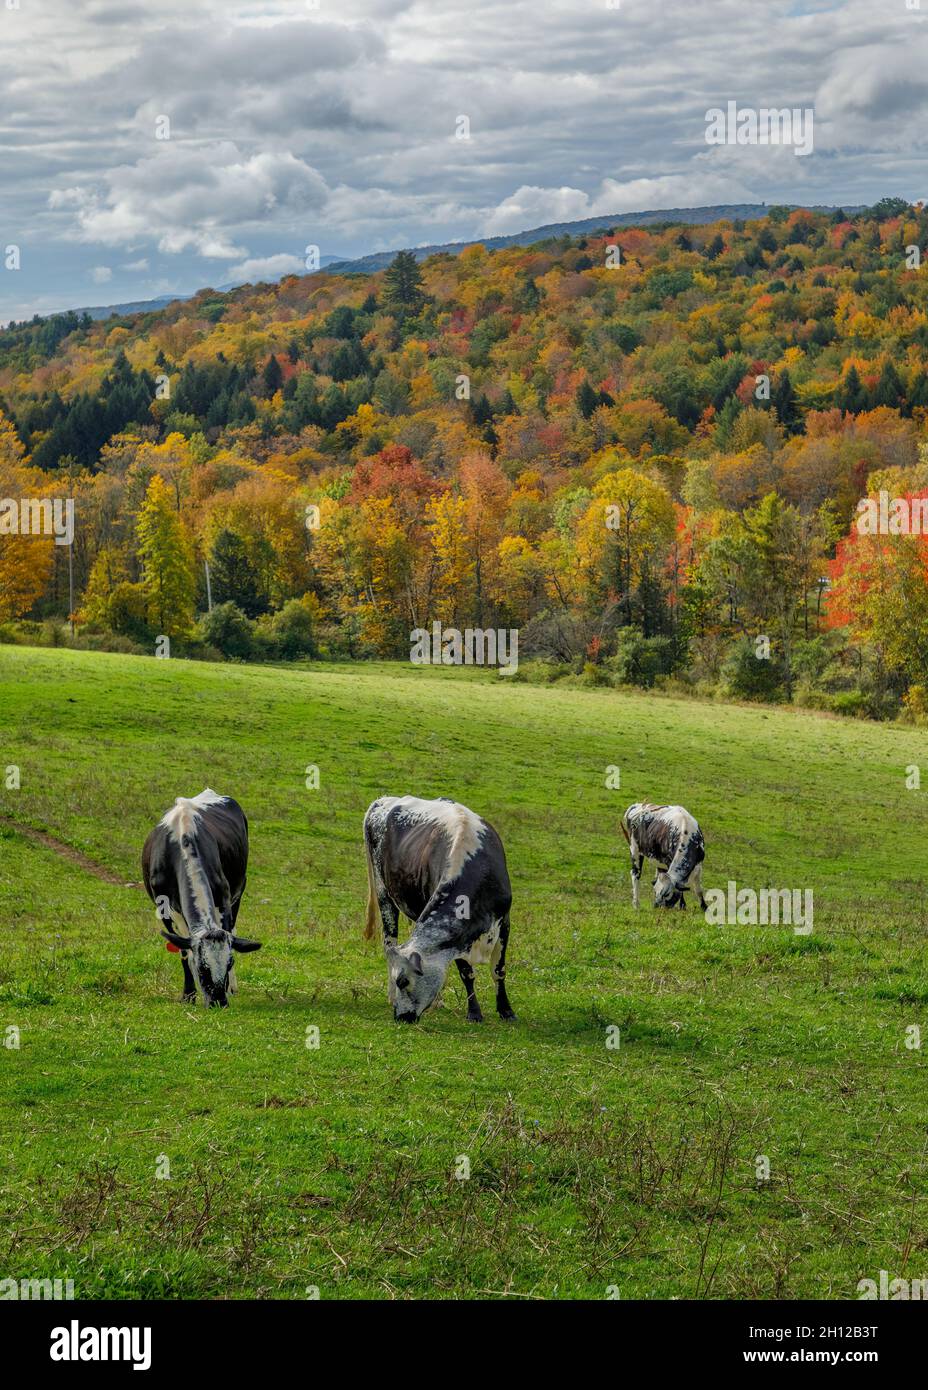 Ein Berghang mit Herbstfarben bietet den Hintergrund für 3 Kühe, die auf der Sugarbush Farm in Woodstock, Vermont, USA, grasen Stockfoto